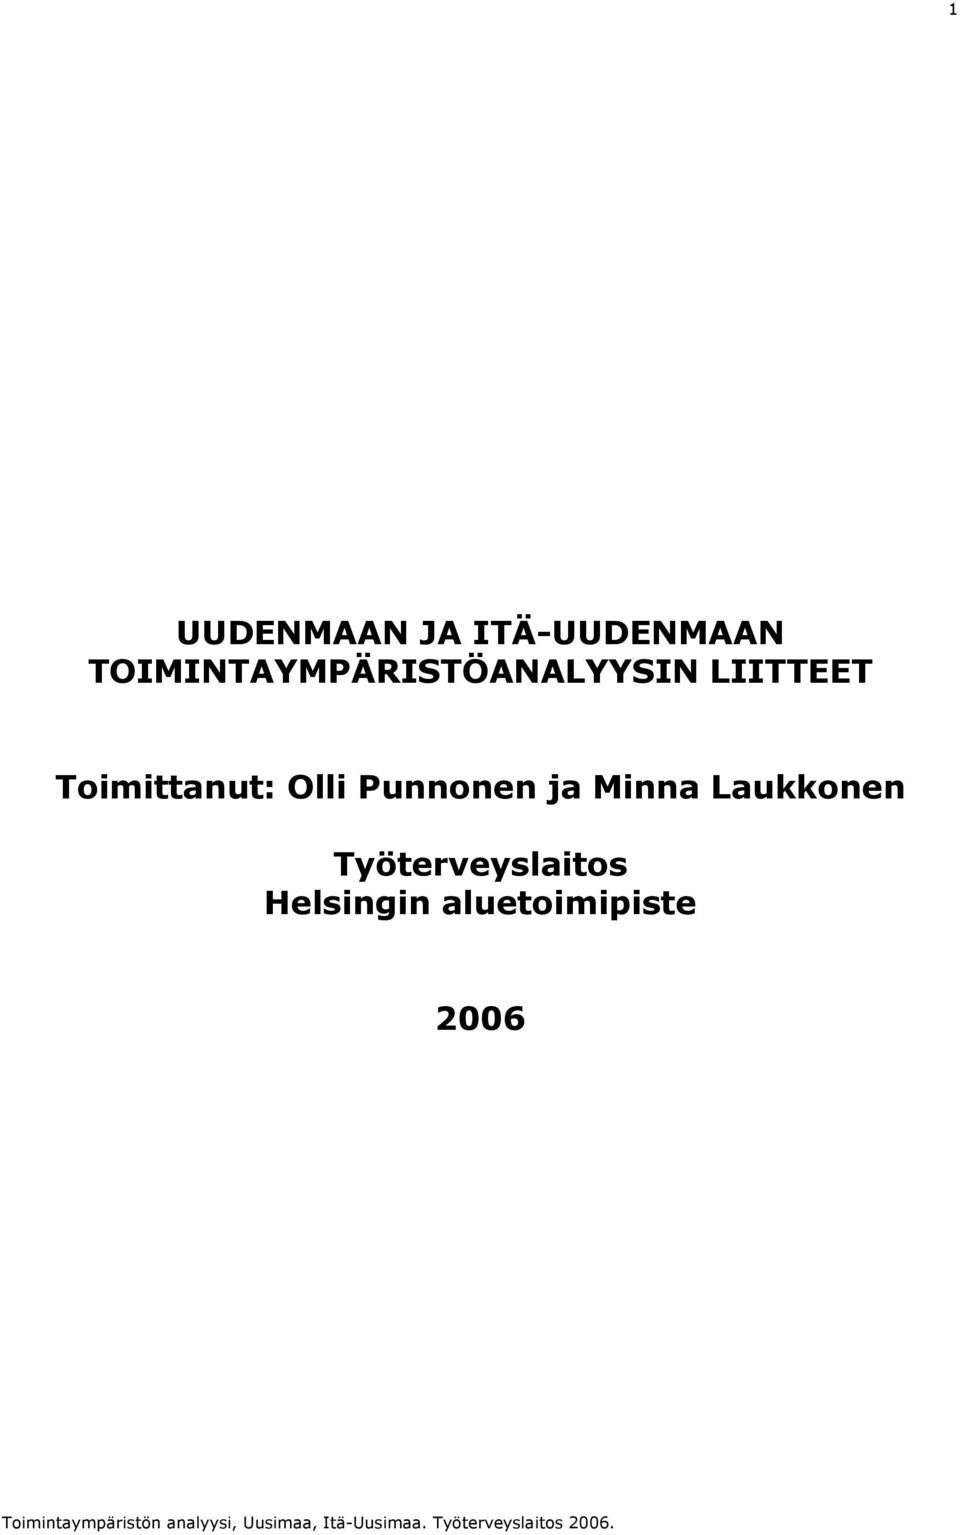 Toimittanut: Olli Punnonen ja Minna